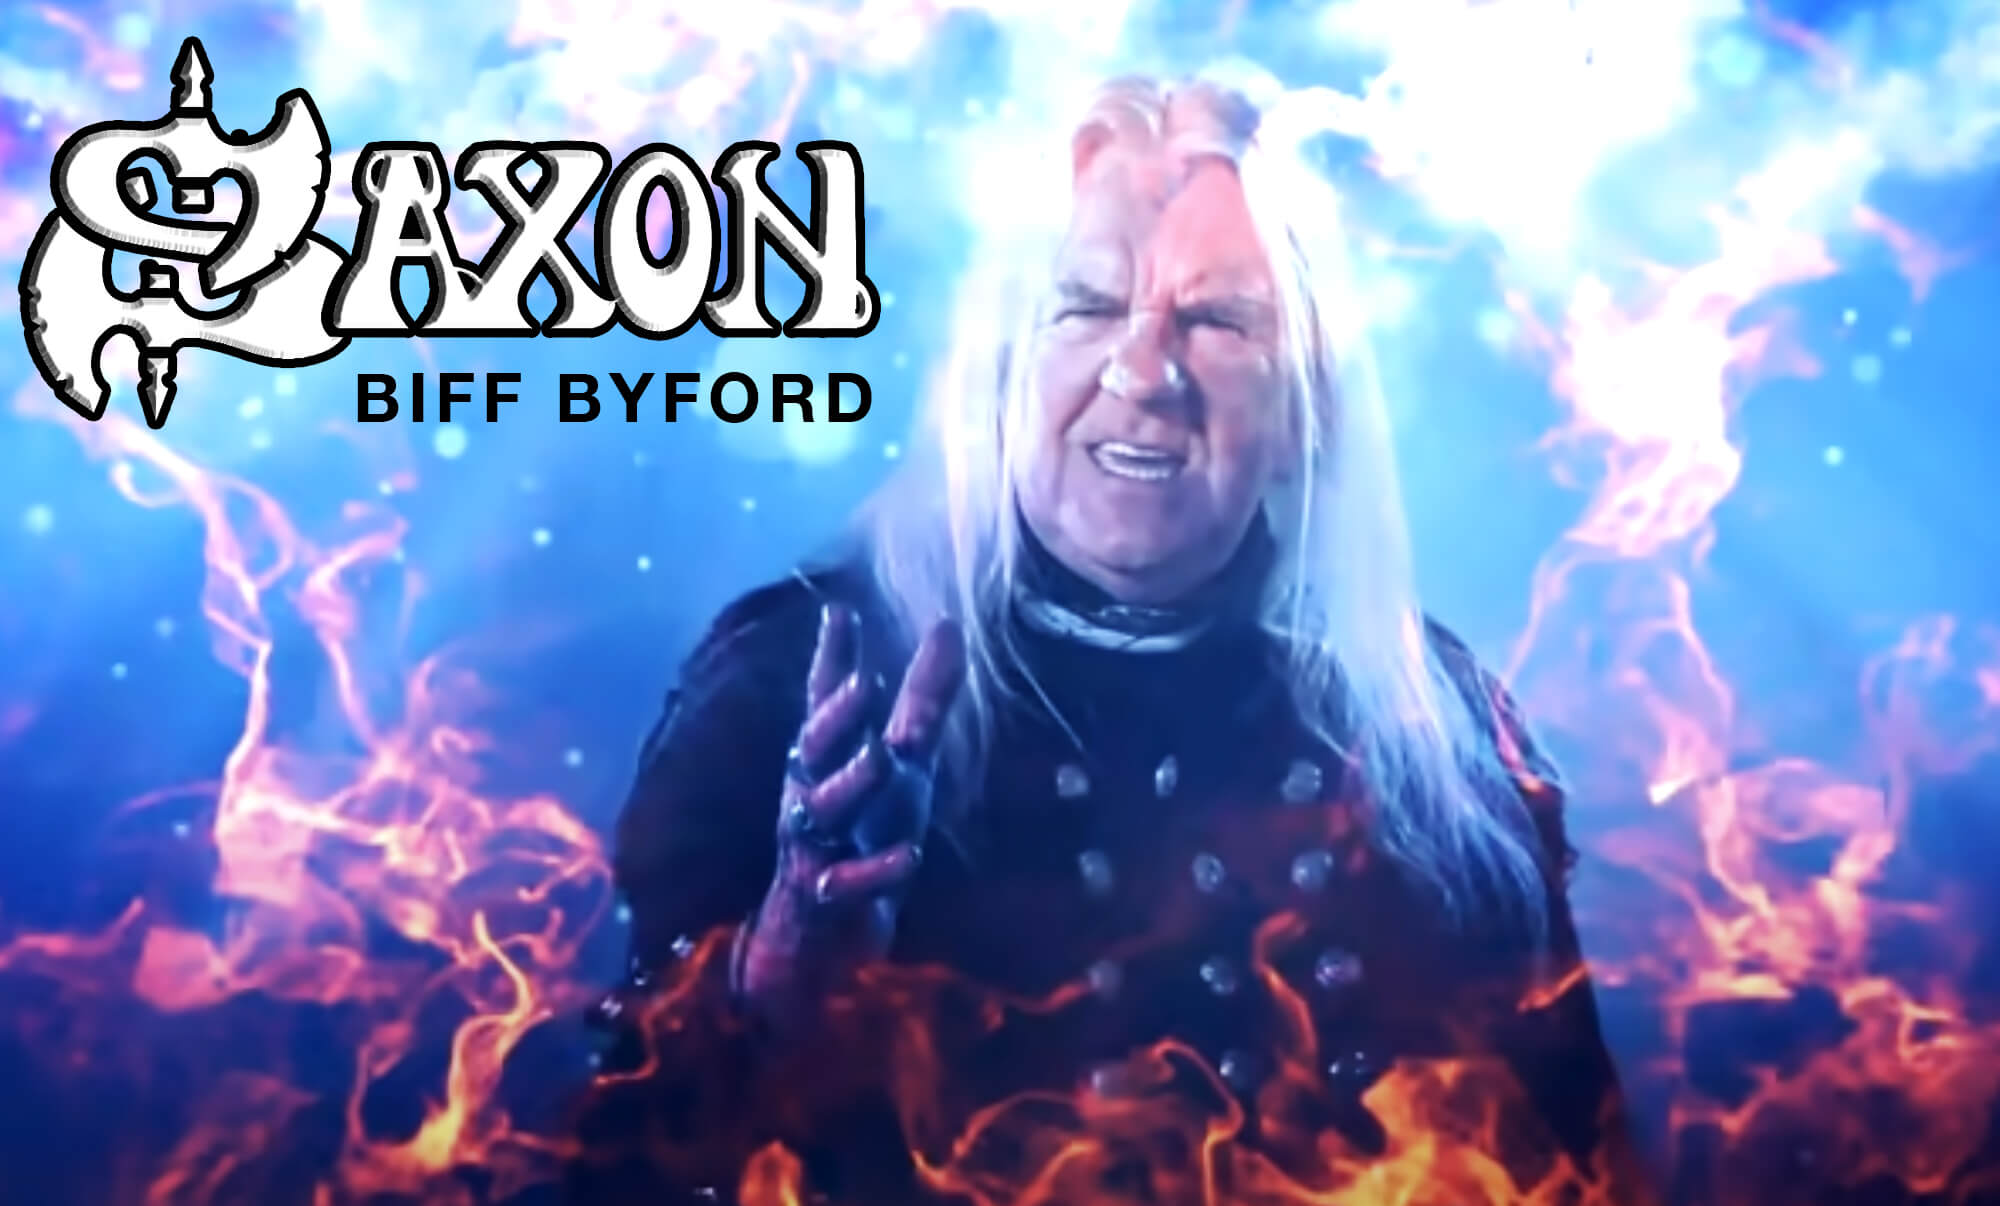 Saxon: Biff Byford